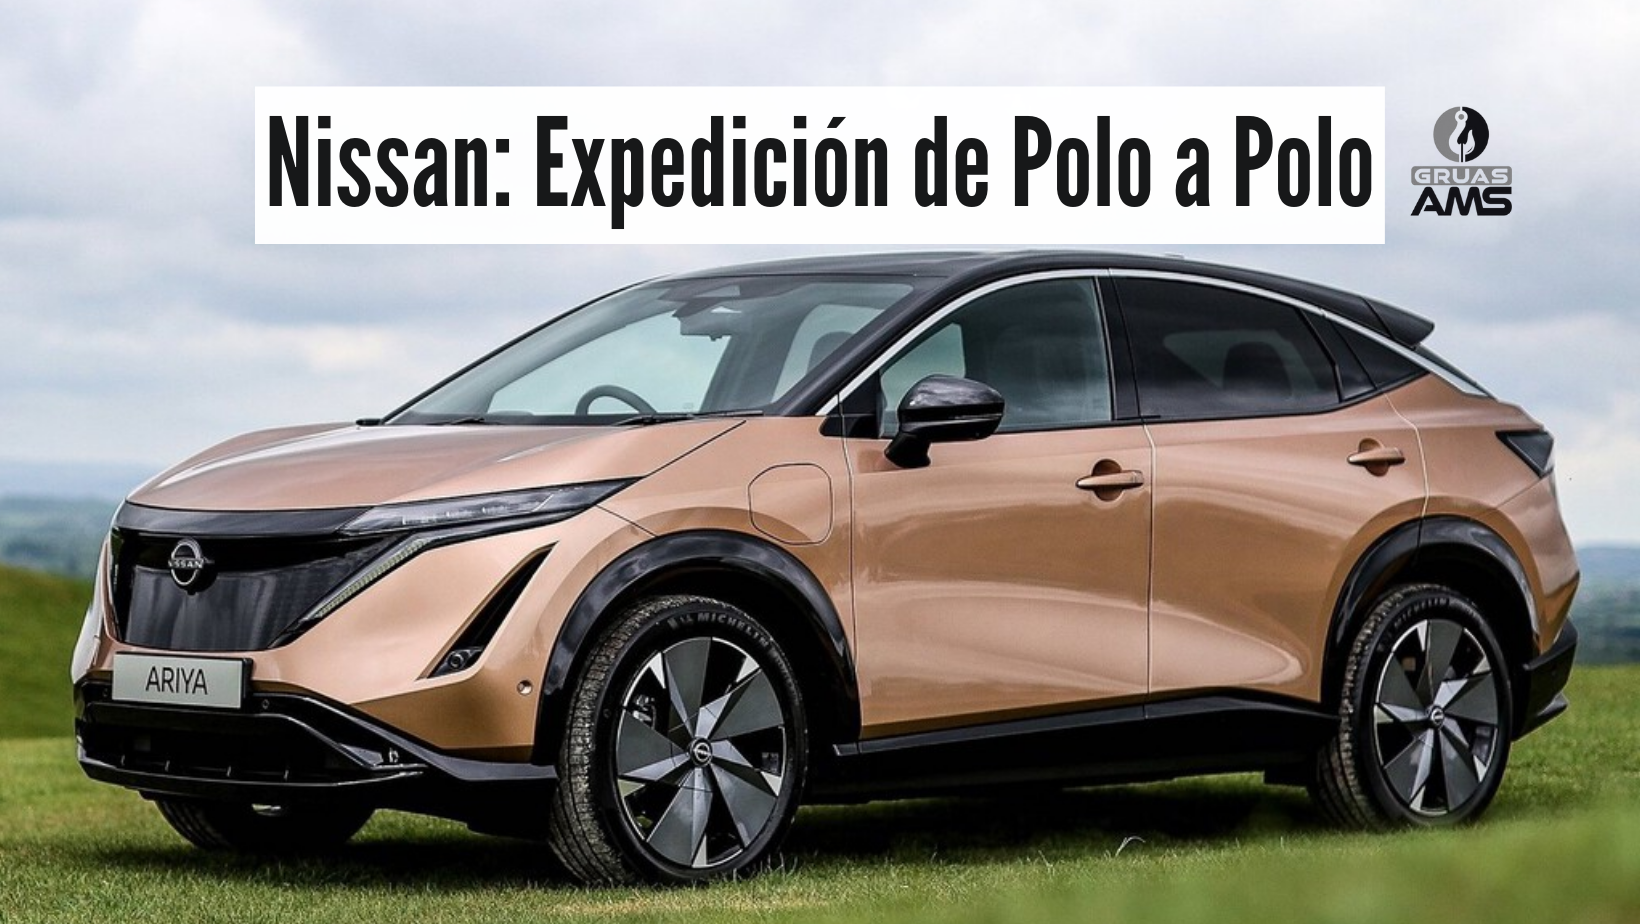 Nissan: Expedición de Polo a Polo